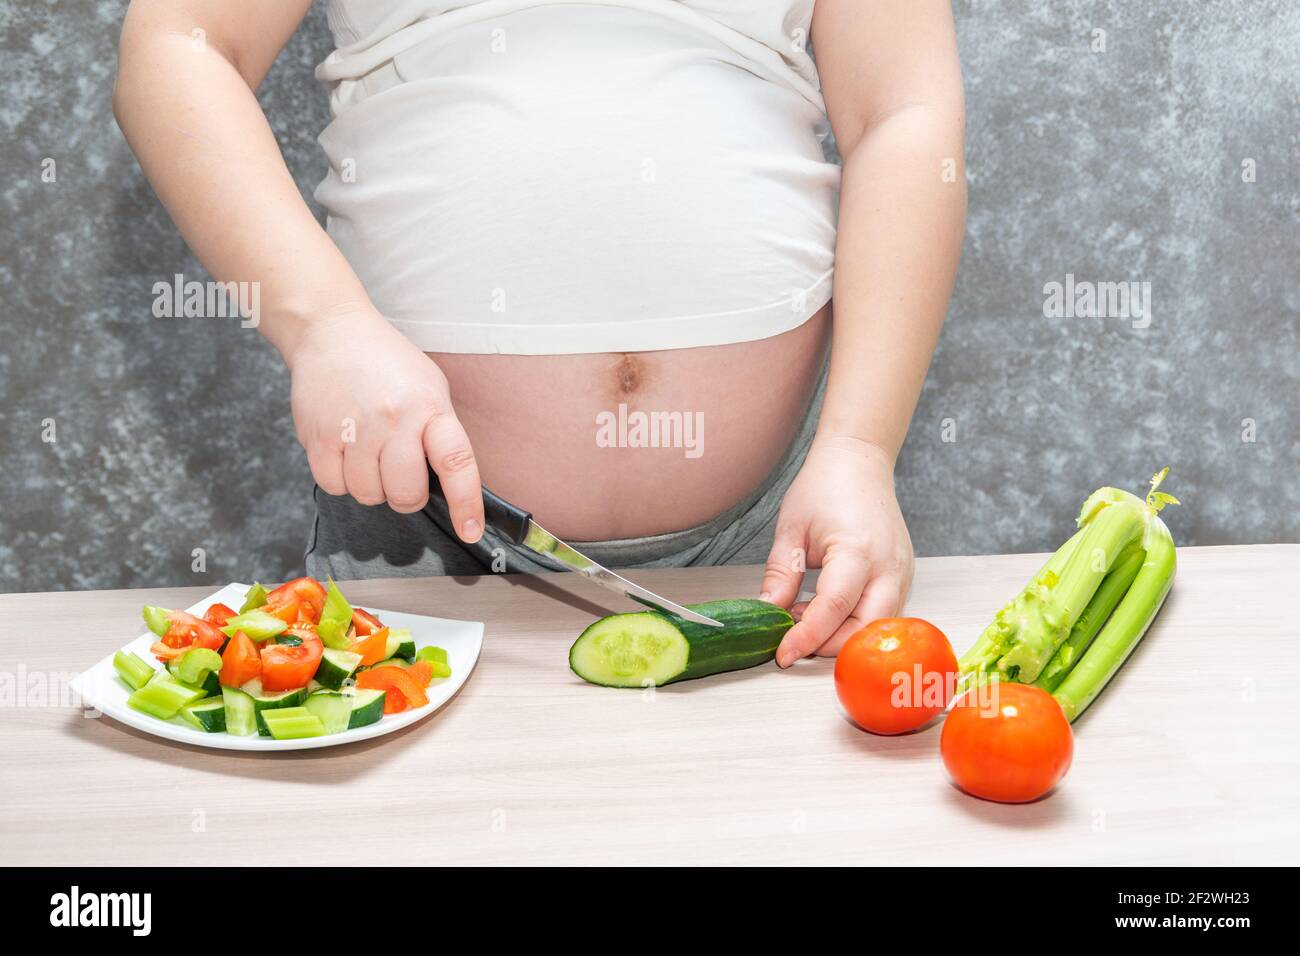 Femme enceinte coupant le concombre pour une salade verte fraîche, femme  prépare un délicieux dîner biologique à la maison, une alimentation saine  pour la future mère. Concept de h Photo Stock -